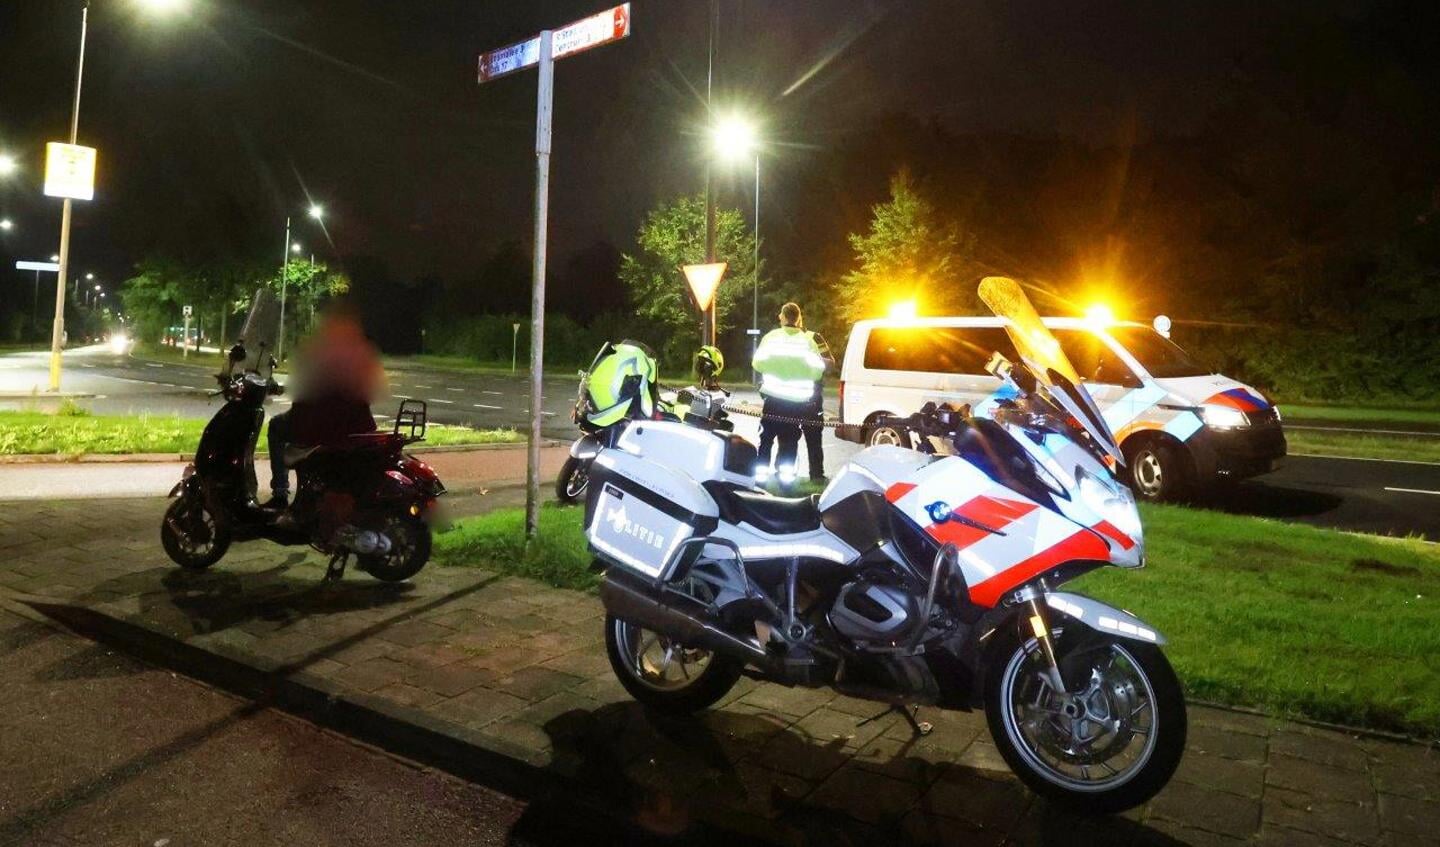 Een 17-jarige bestuurder van een scooter negeerde zaterdagavond aan de Bruistensingel in Den Bosch een stopteken van de politie. Iets verderop stak hij met zijn scooter de straat over waarna hij in aanrijding kwam met een personenauto.